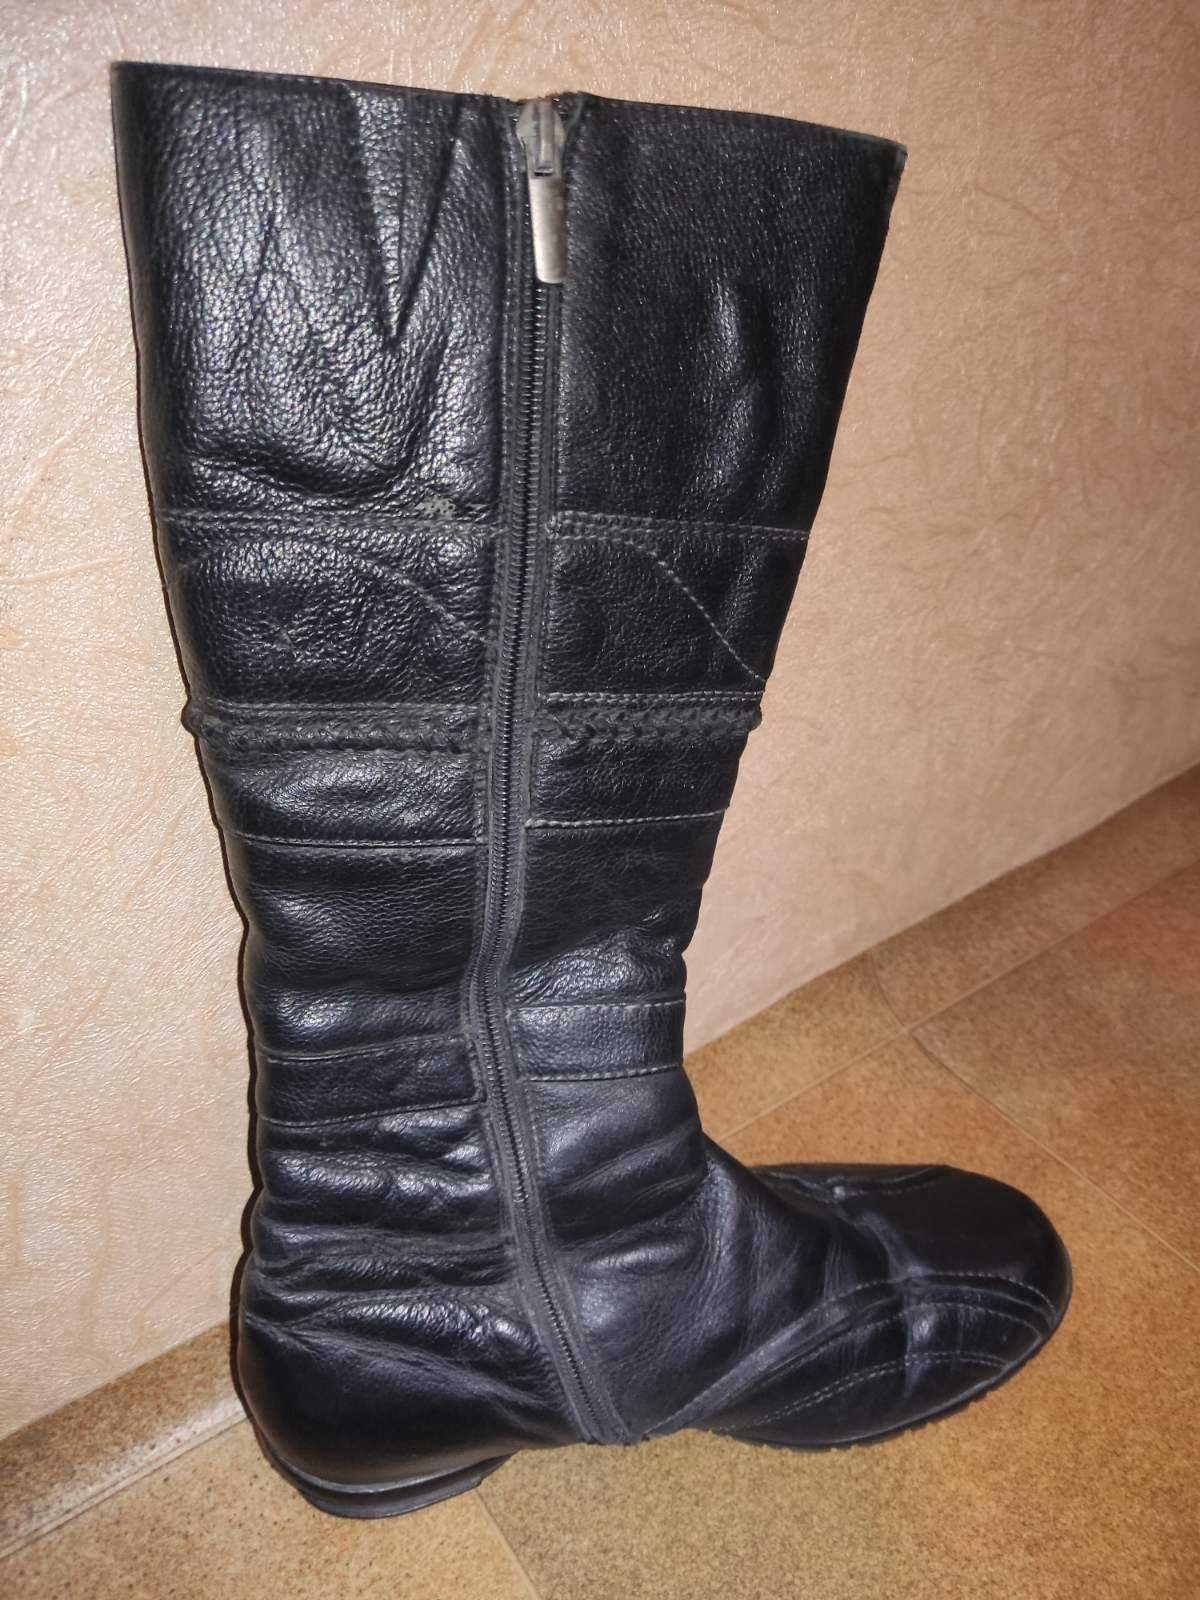 Сапожки Жіноче взуття, натуральна шкіра - 38 р. Сапоги зимние, кожаные